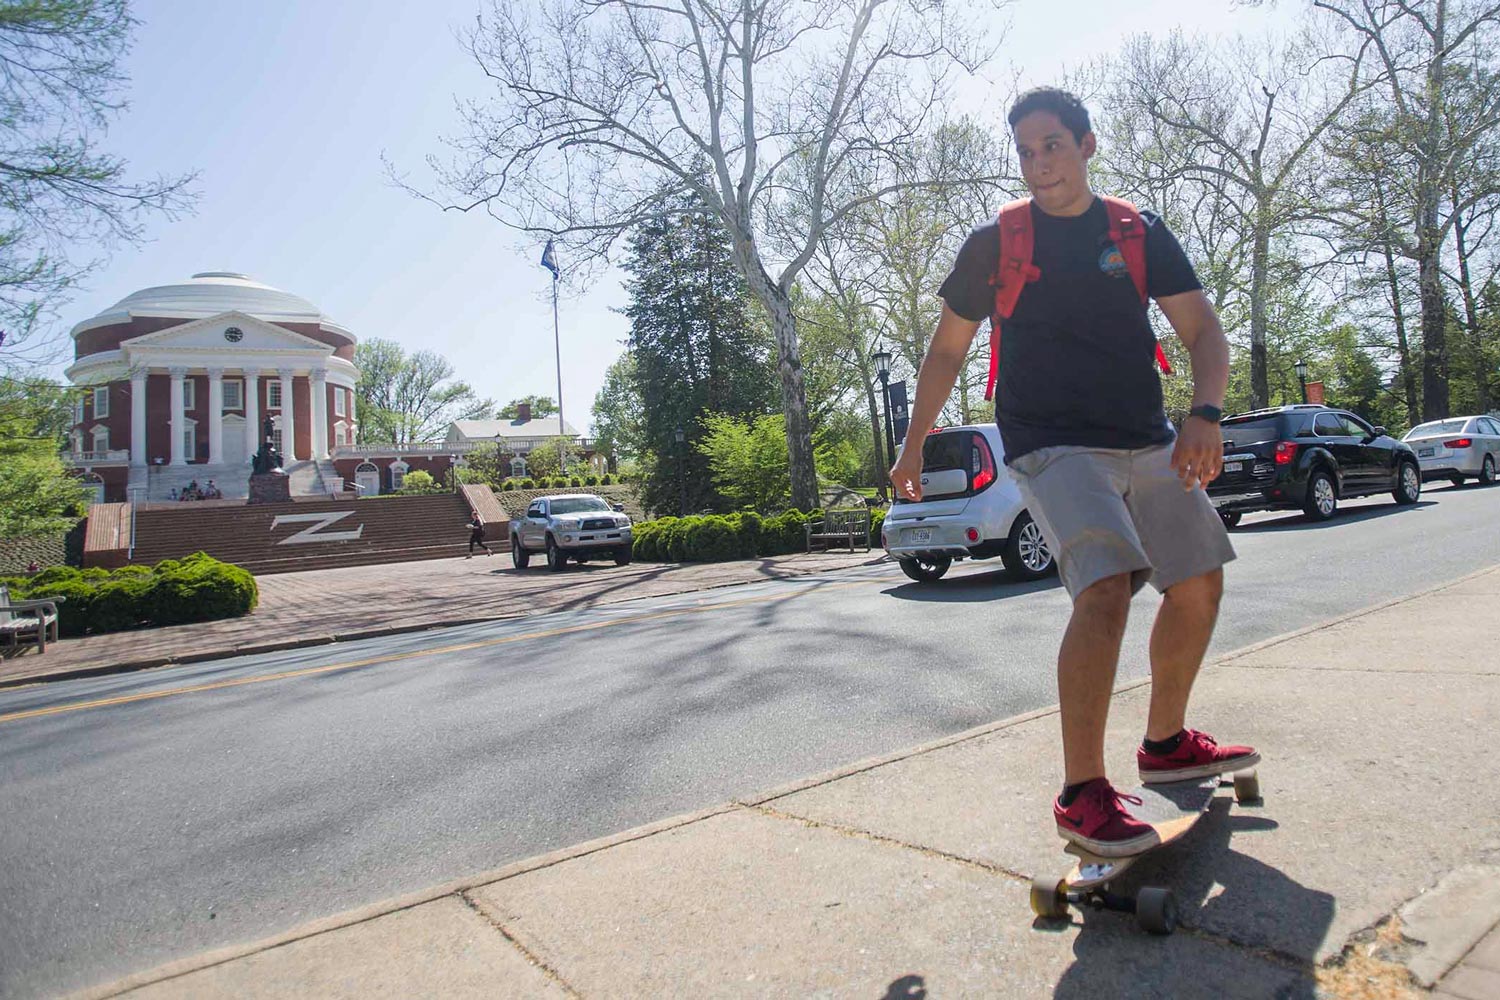 Jesus Gomez riding a skateboard on the sidewalk